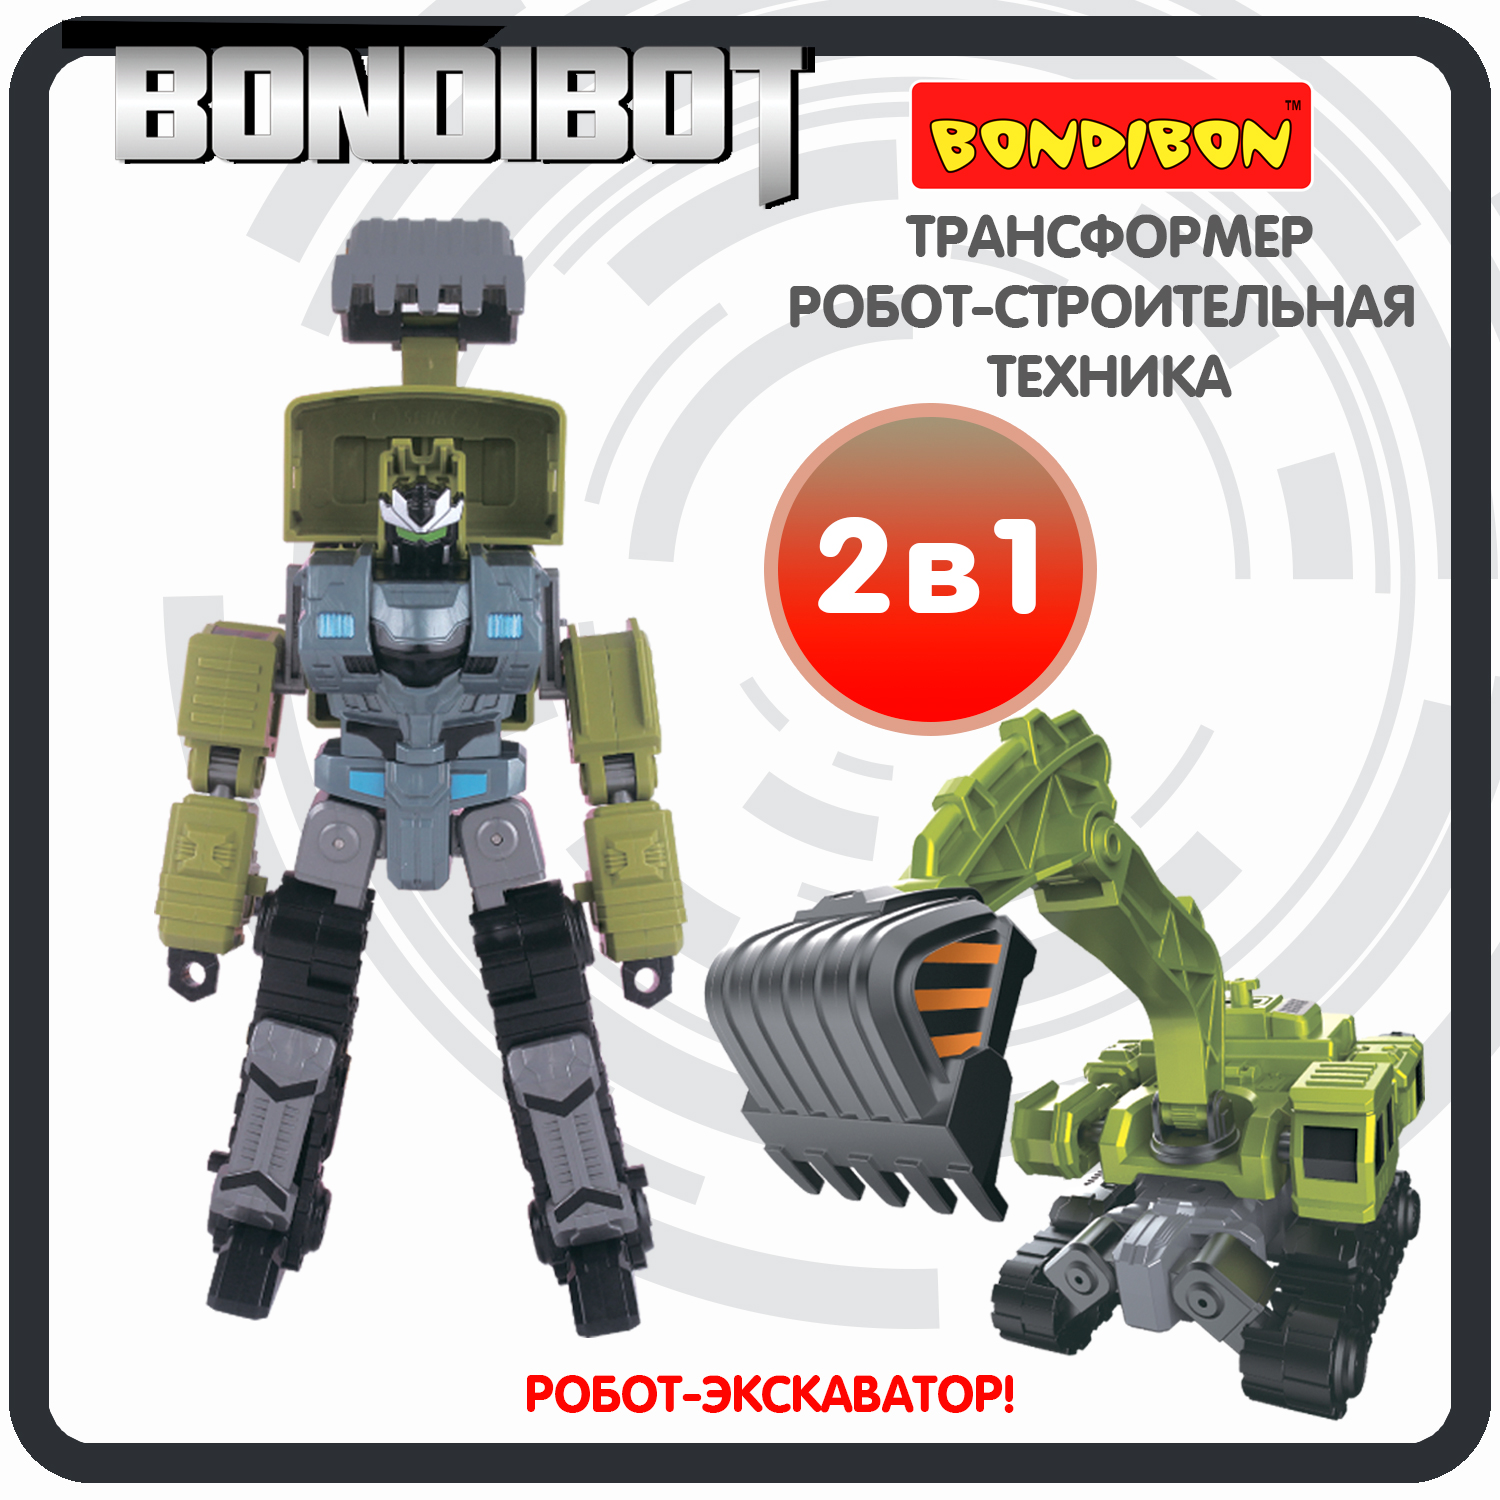 Трансформер робот-строительная техника, 2в1 BONDIBOT Bondibon, экскаватор / ВВ6054 bondibon трансформер bondibot 2 в 1 робот экскаватор